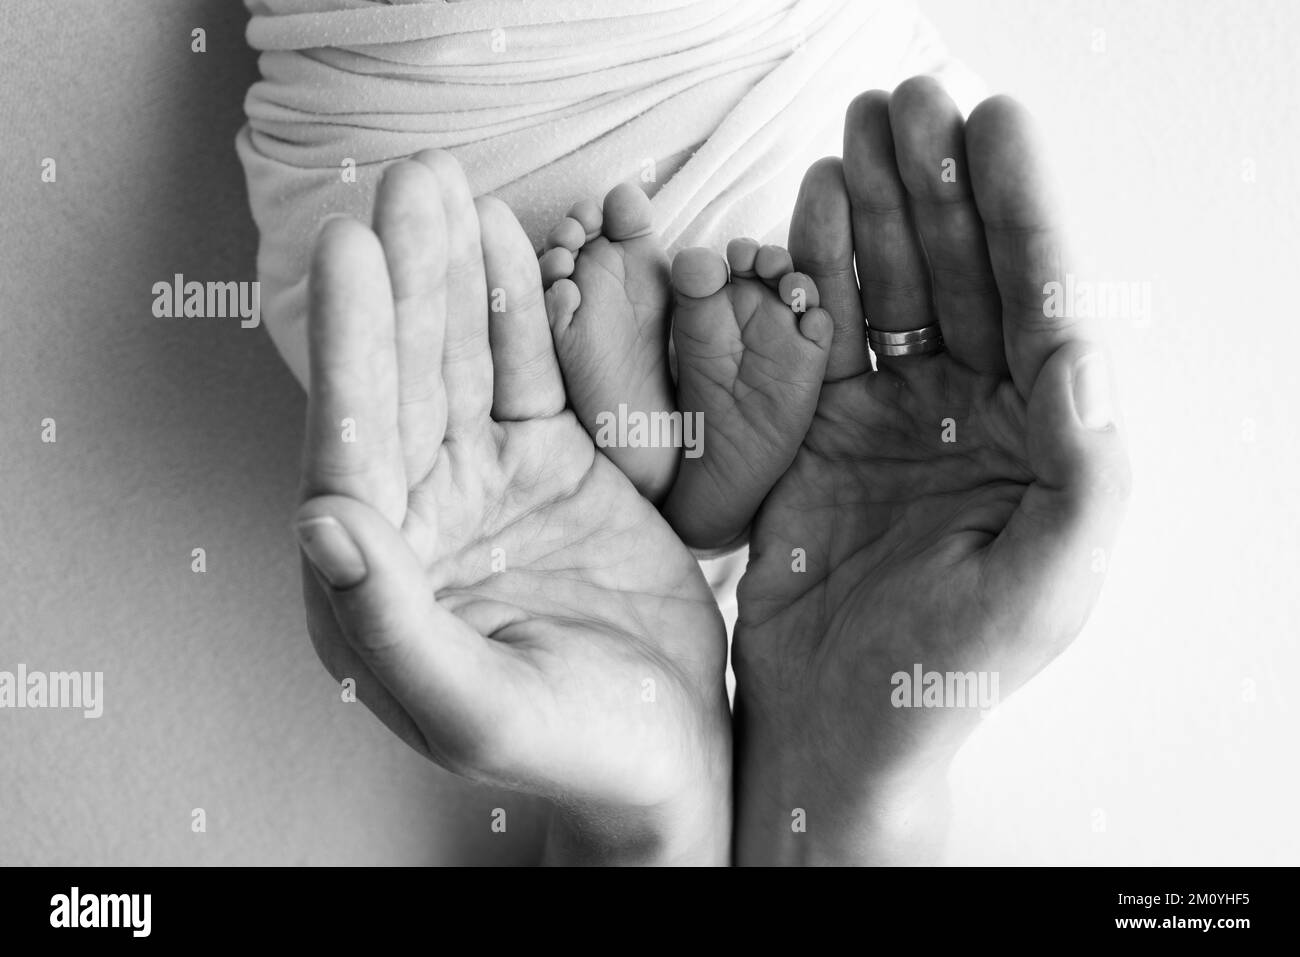 Gambe, dita dei piedi, piedi e talloni di un neonato. Con le mani dei genitori, padre, madre tiene delicatamente le gambe del bambino. Foto Stock